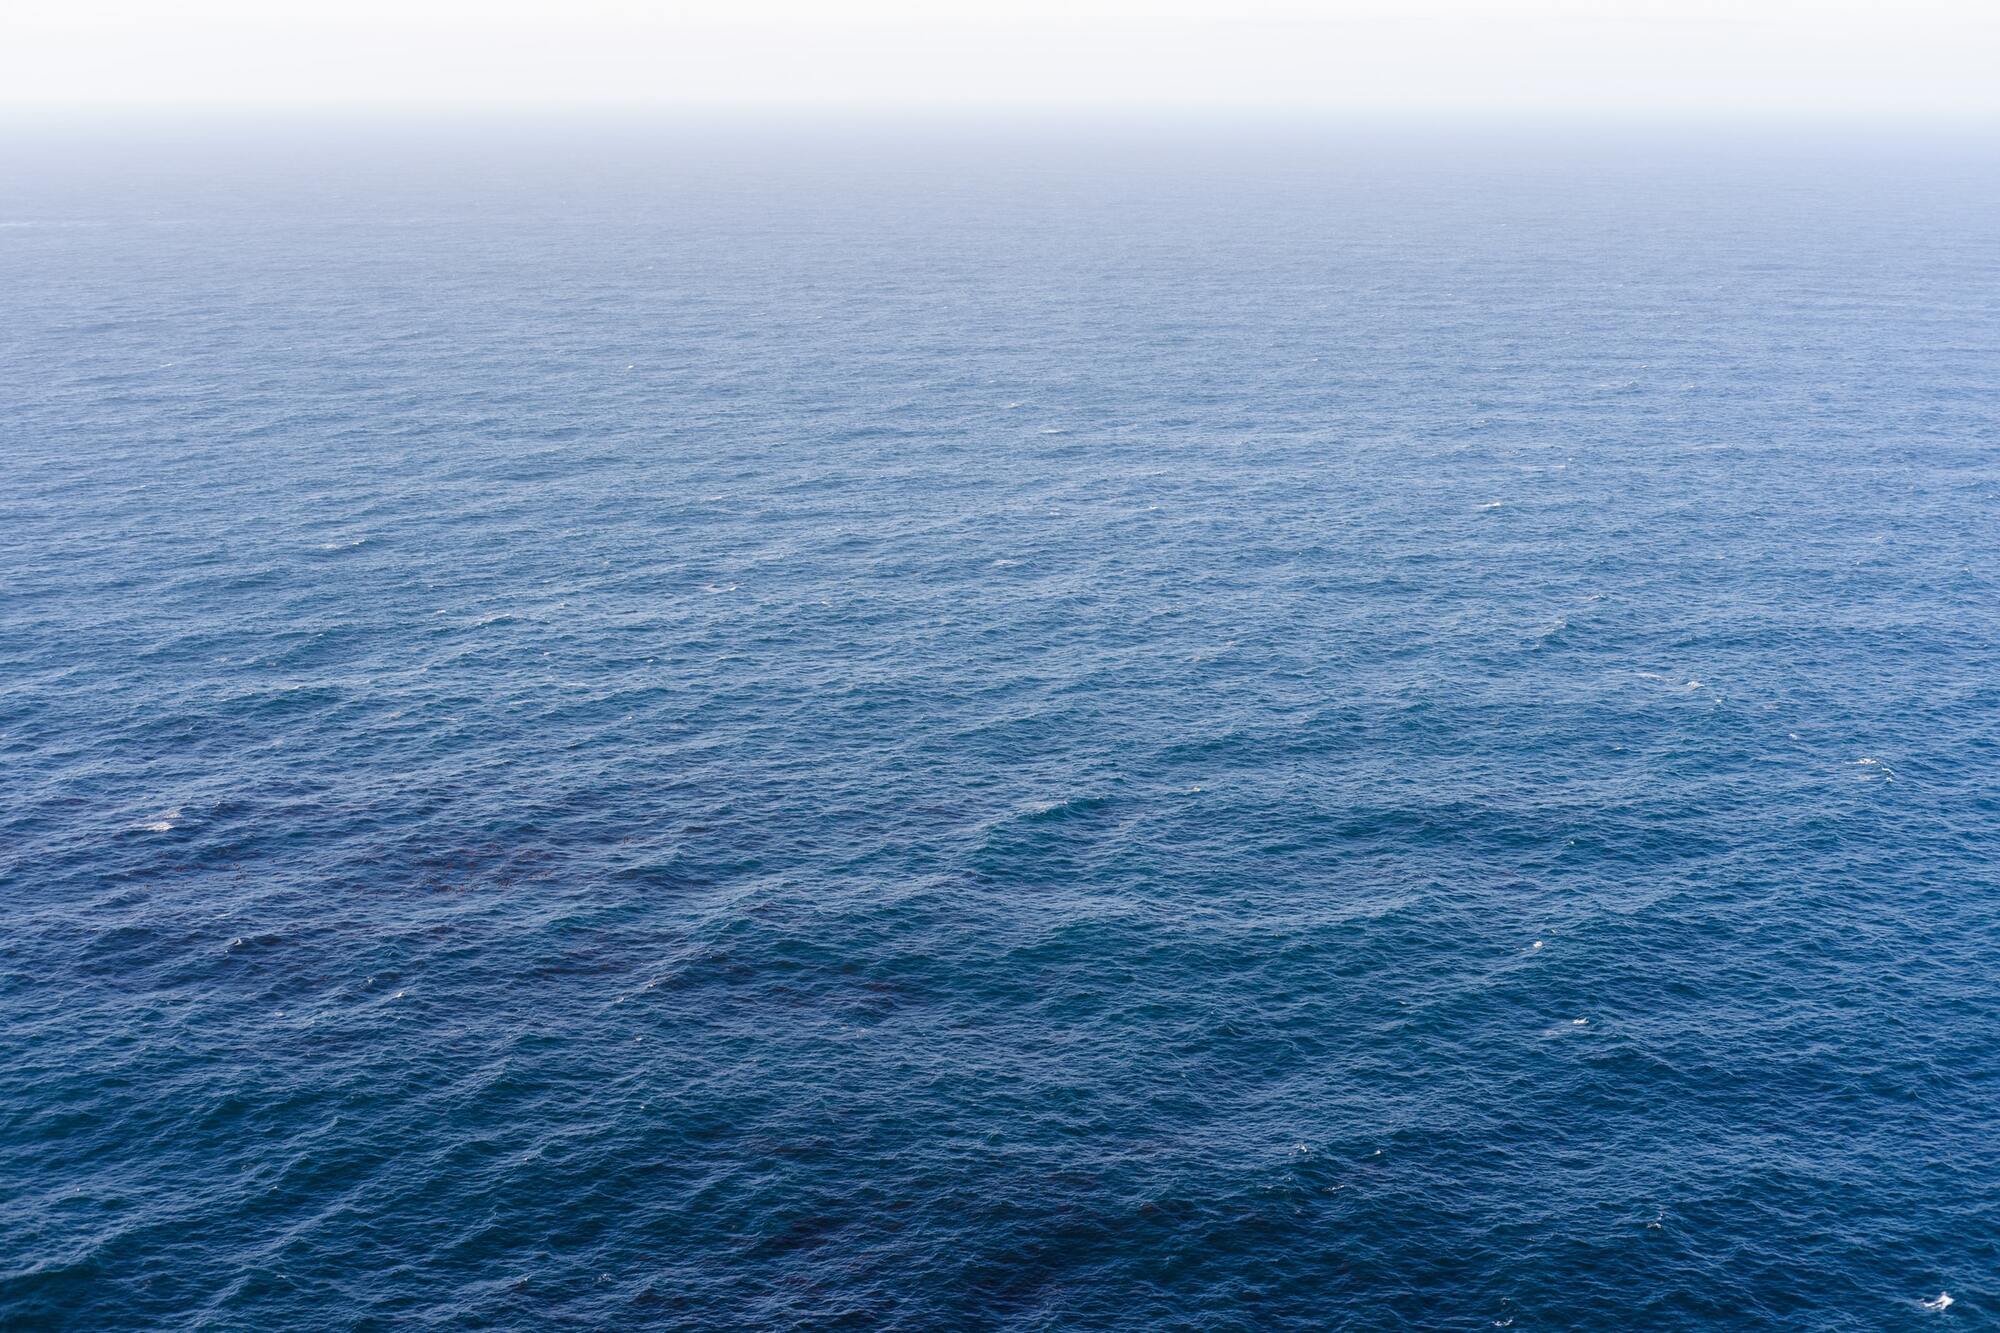 Світовий океан займає більш ніж 70% поверхні Землі